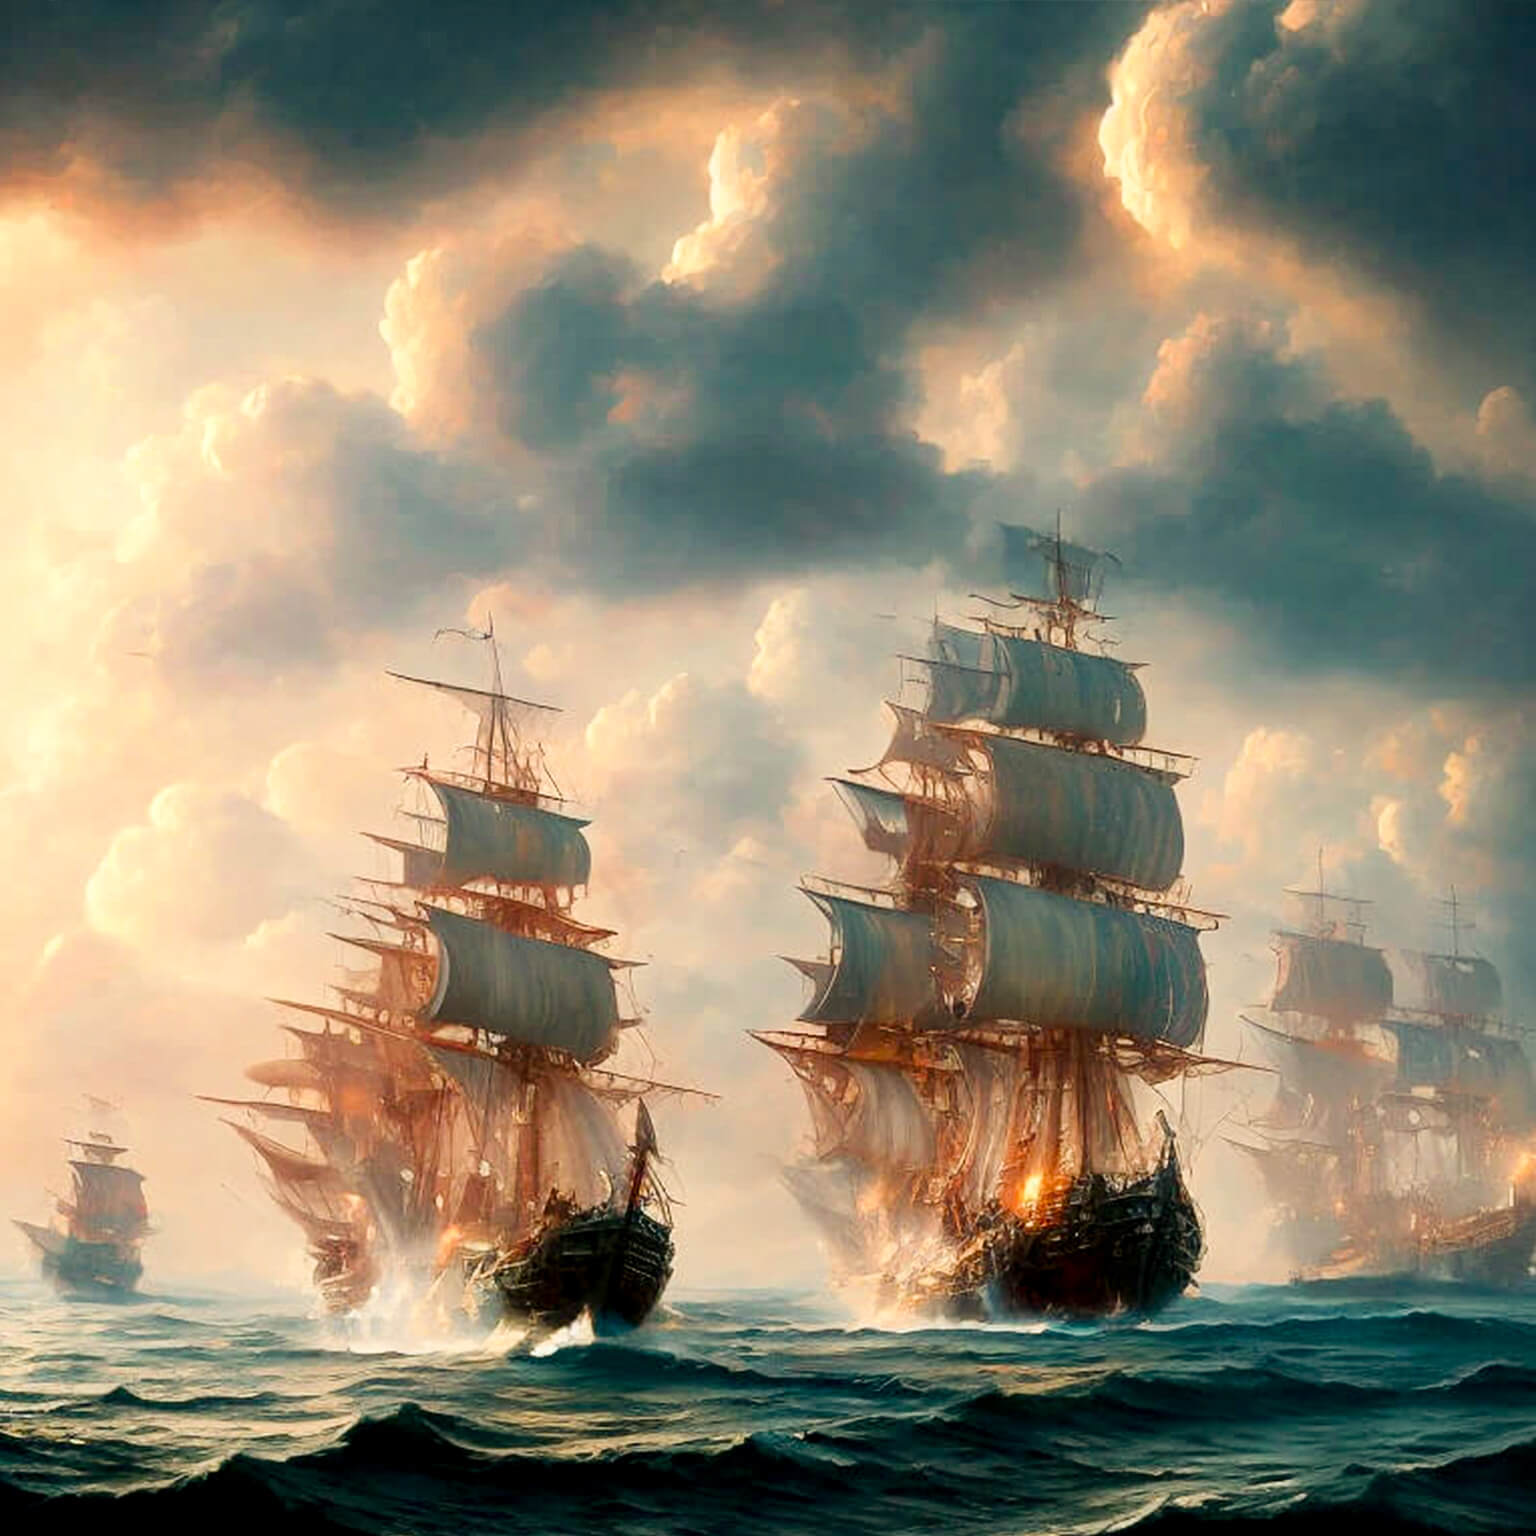 Ein KI Bild von einer Flotte von alten Segelschiffen, die sich mit Kanonen beschießen